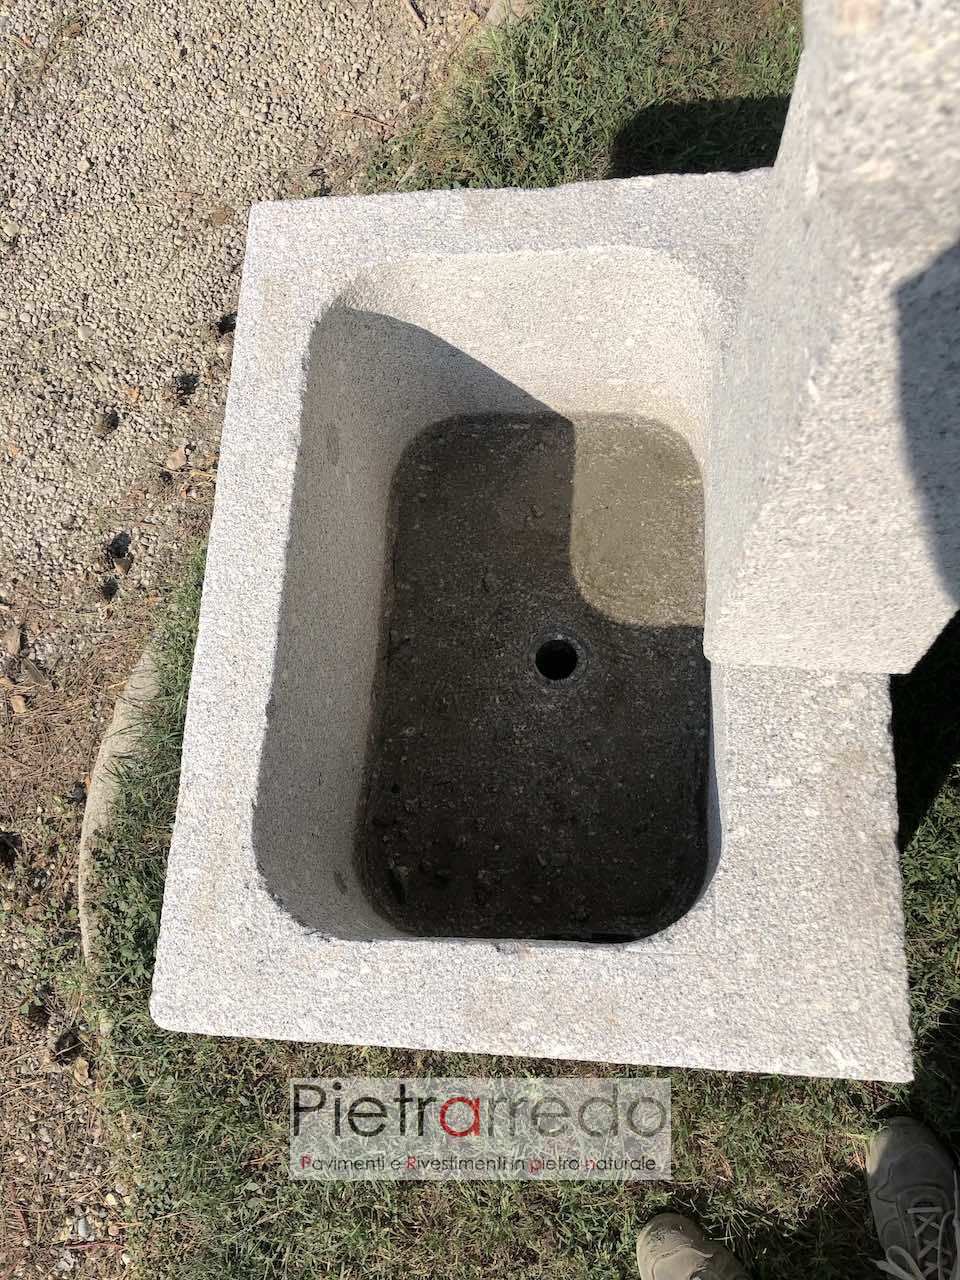 fontana in granito grigio da terra pietrarredo milano roma prezzo costo fatta a mano rustica